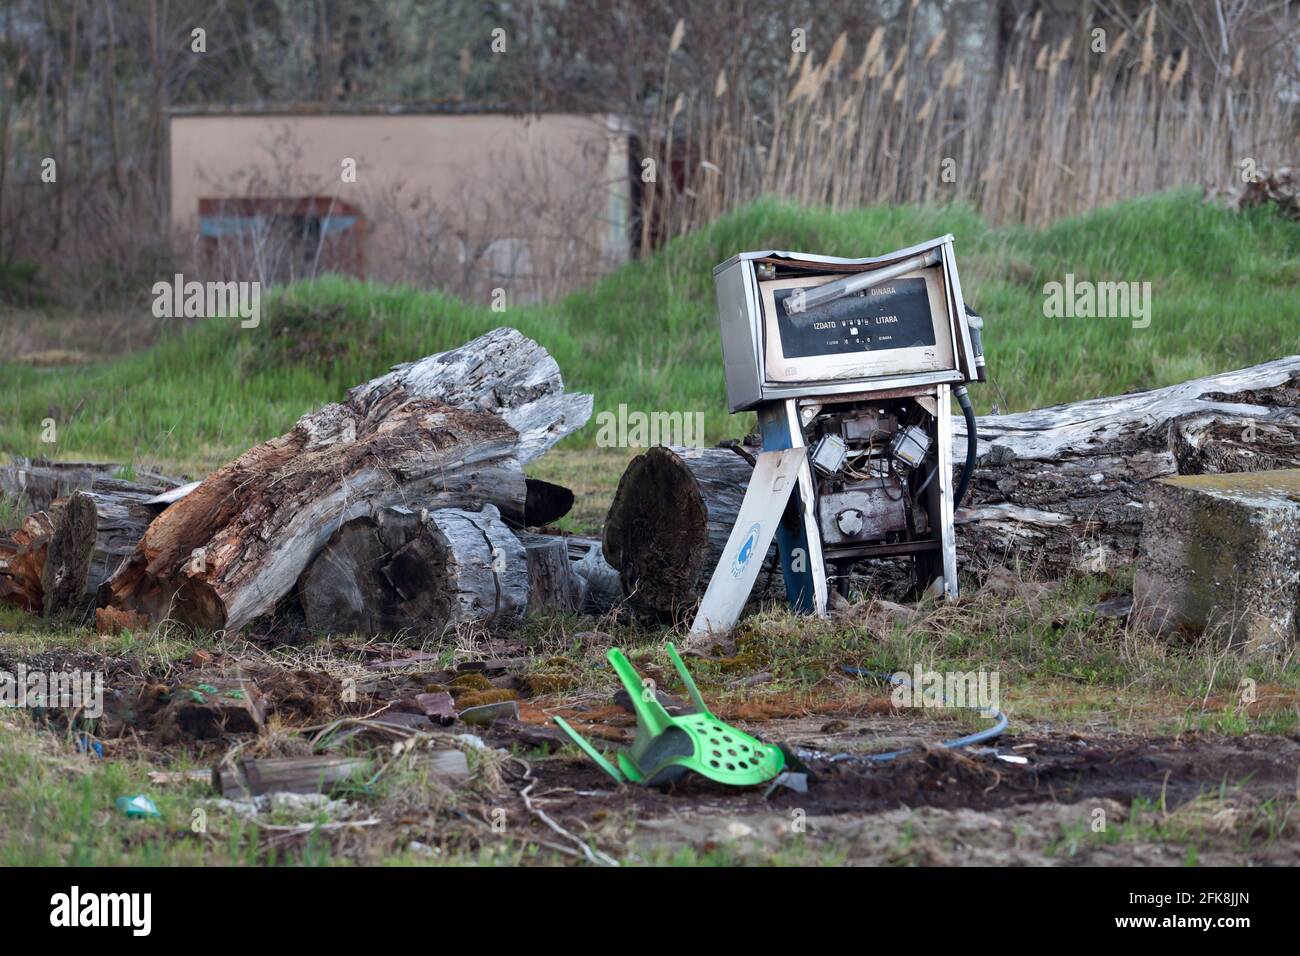 Broken petrol pump immagini e fotografie stock ad alta risoluzione - Alamy